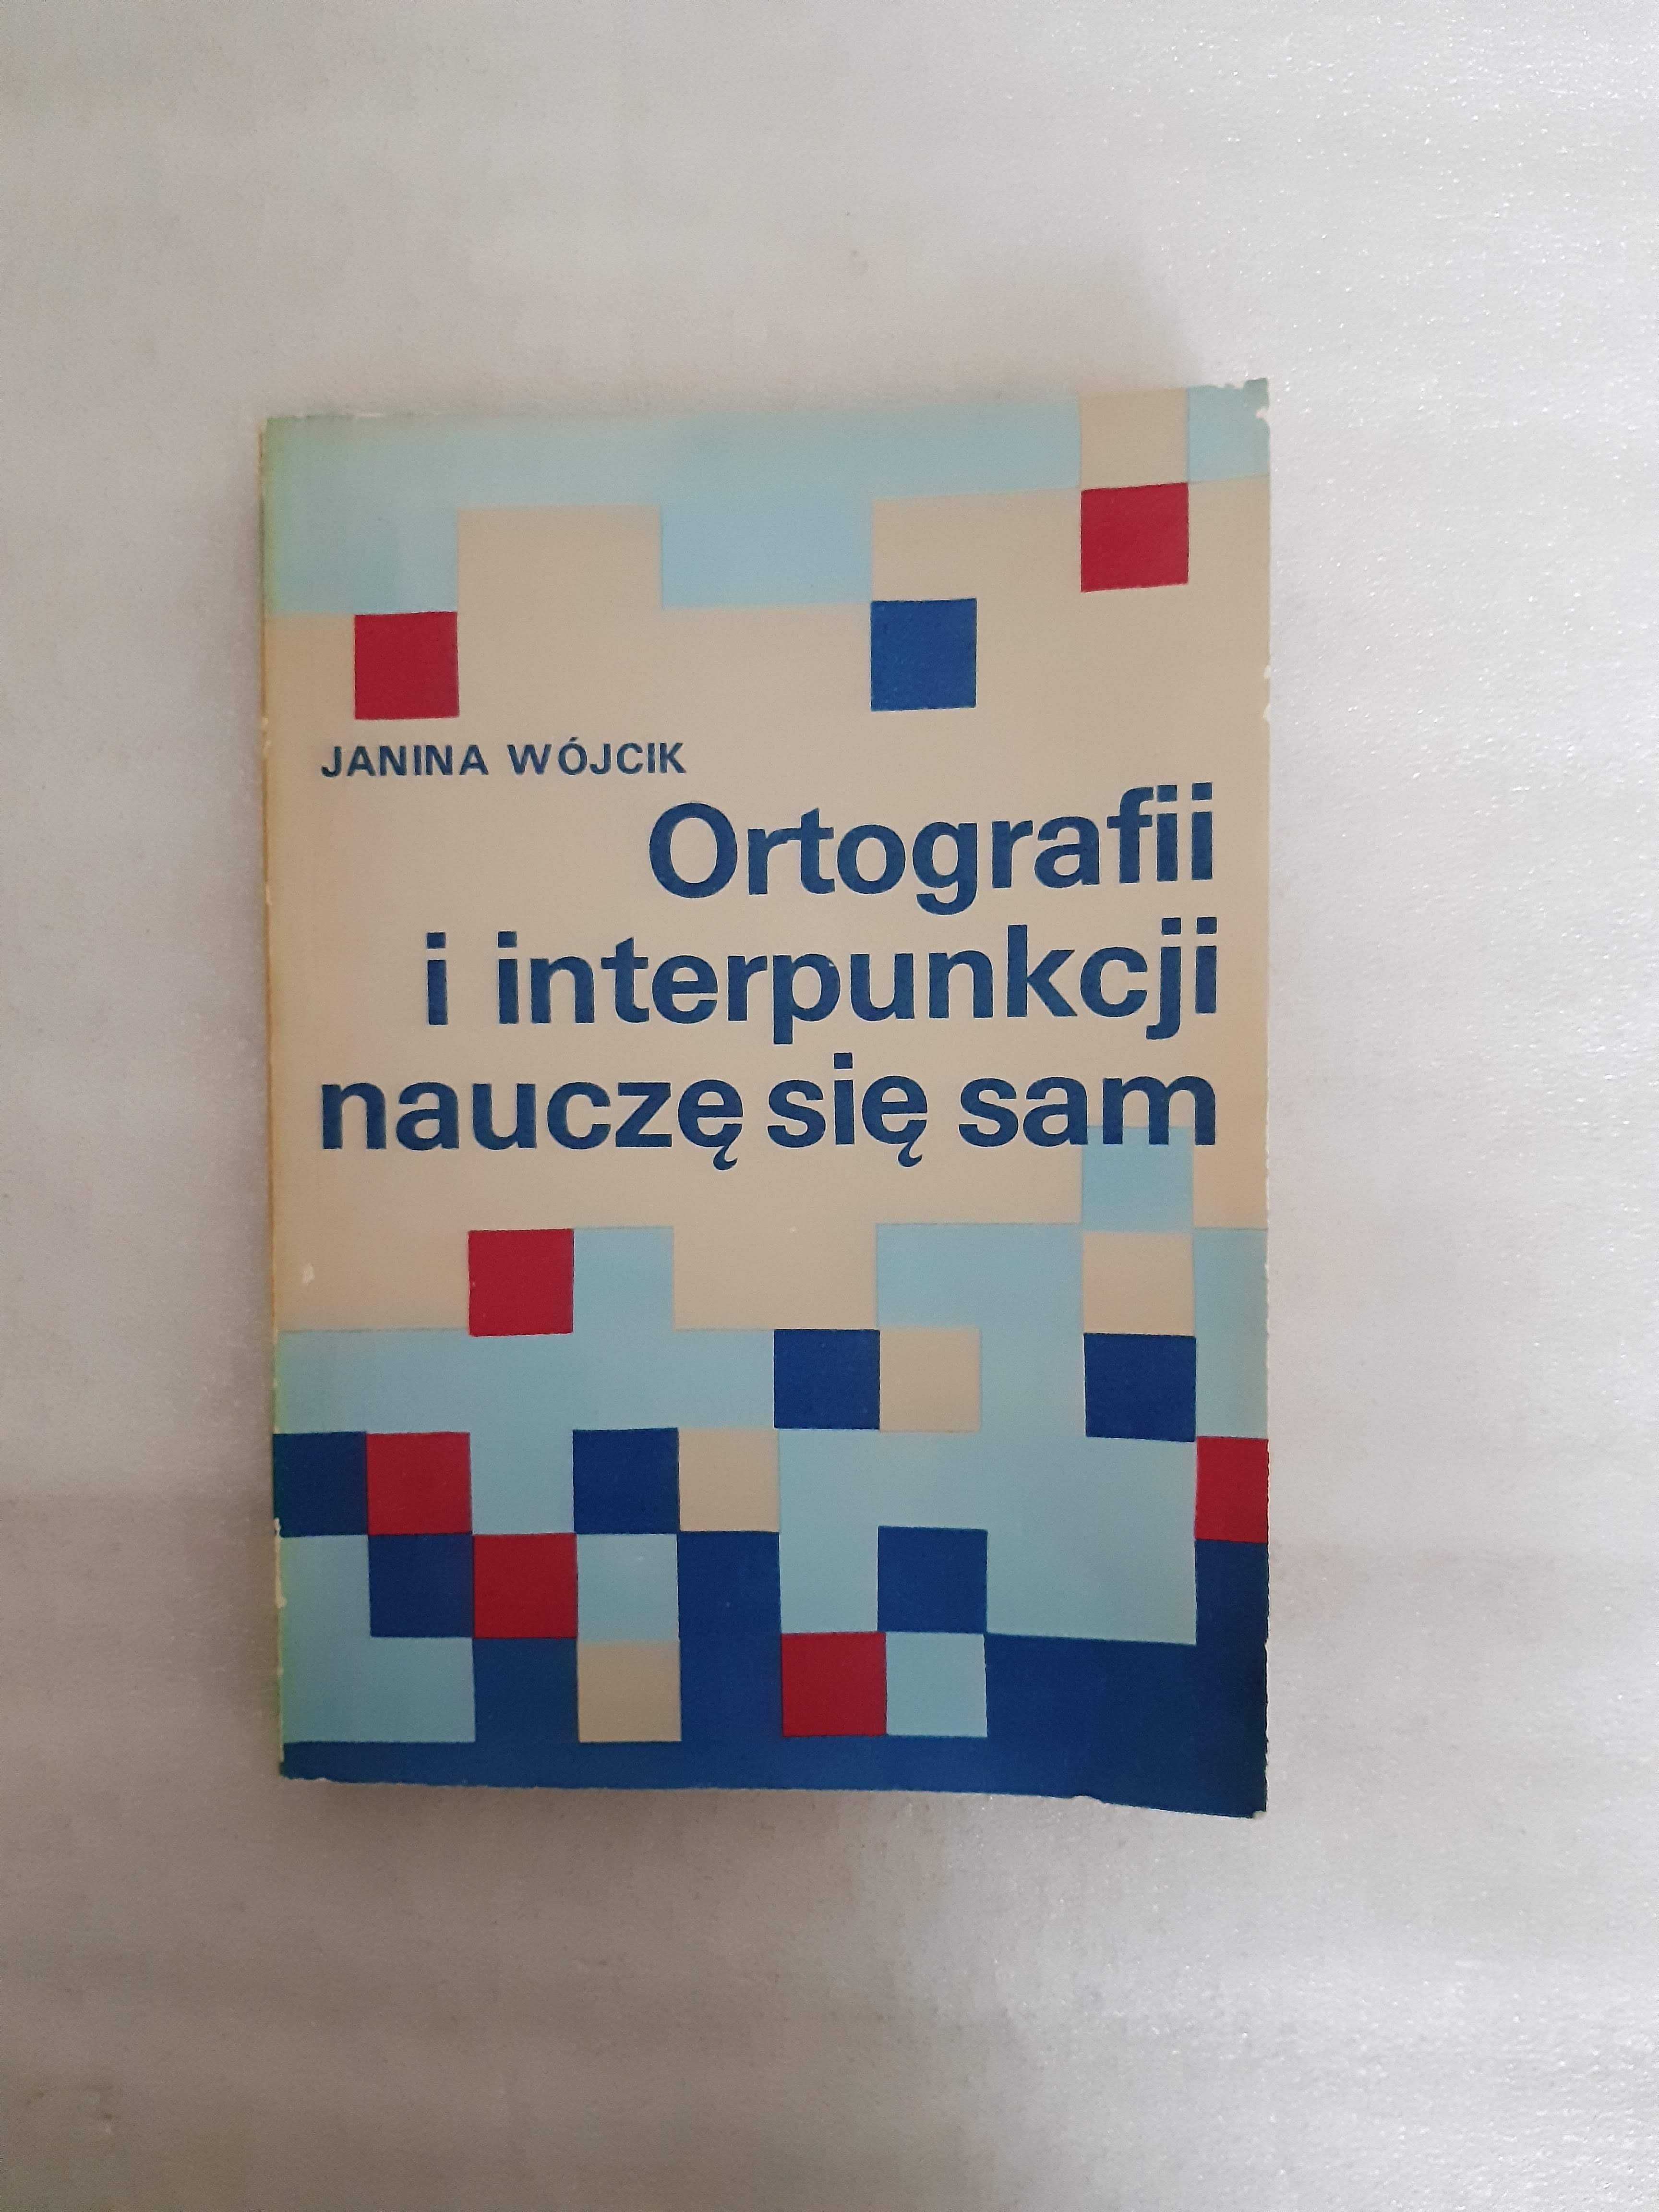 "Ortografii i interpunkcji nauczę się sam" Janina Wójcik